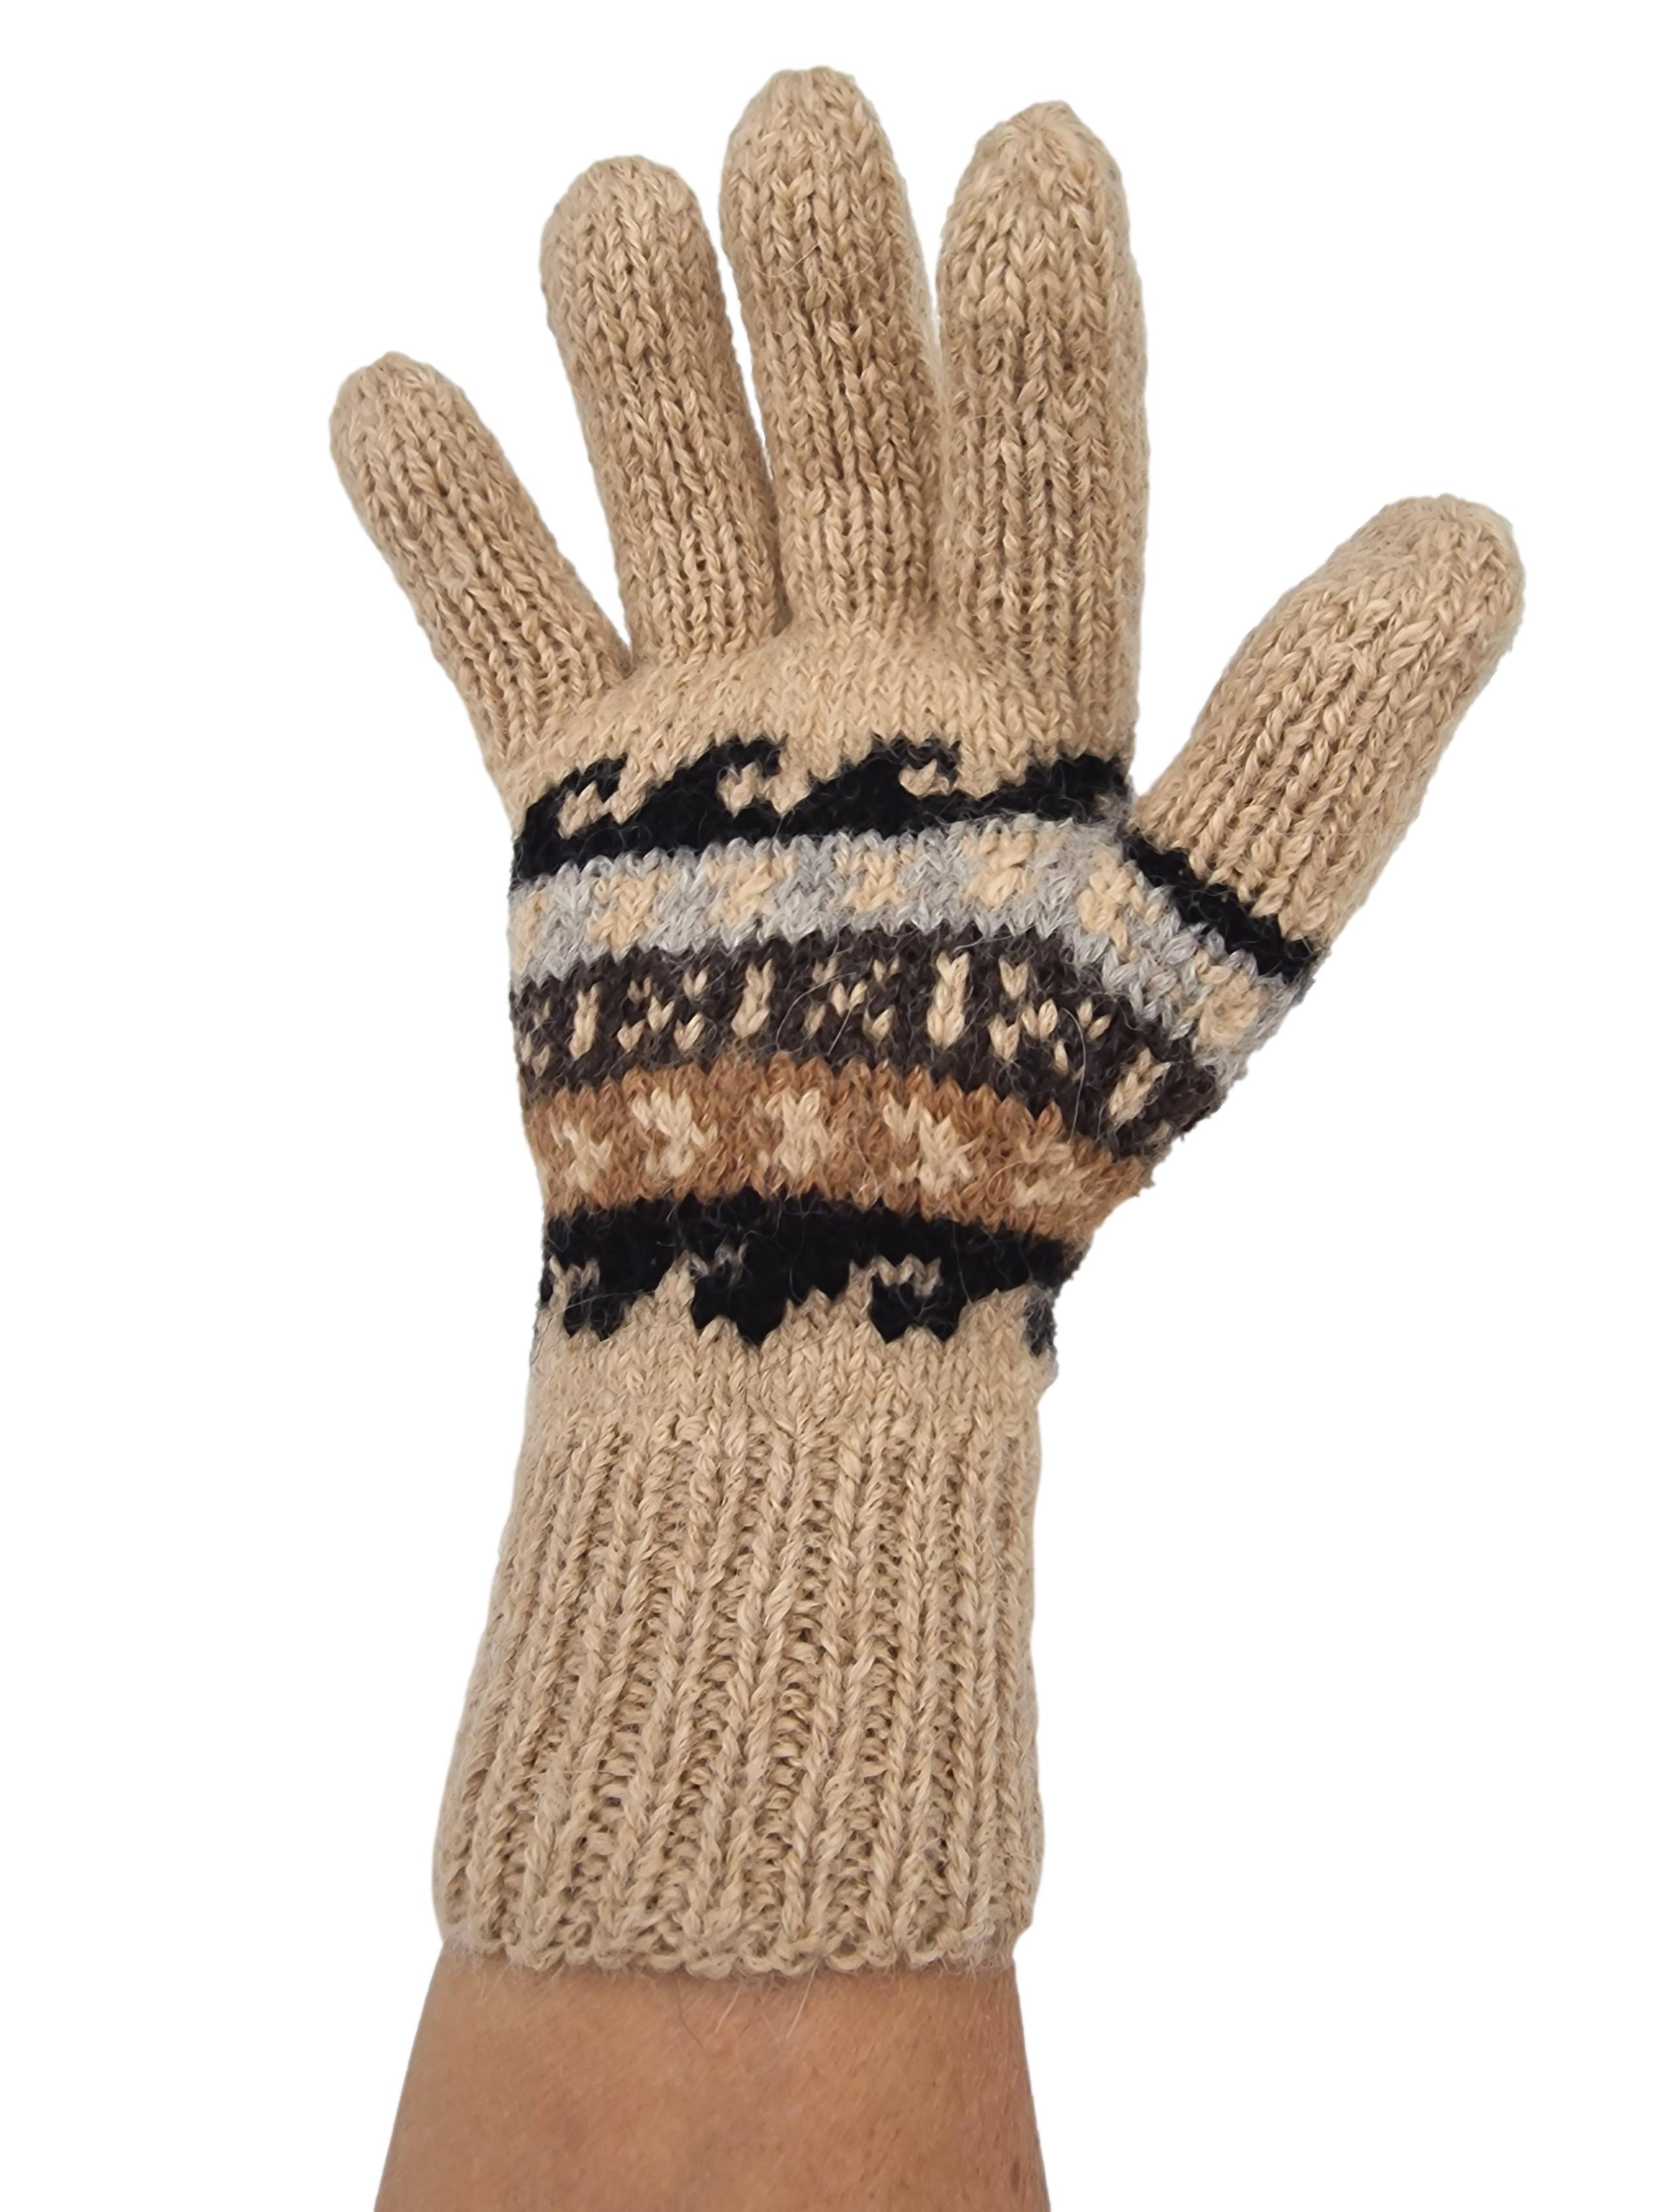 Glatt gestrickte Fingerhandschuhe mit traditionellen Andenmuster. Zeitloses Design, aus 100% feinster Alpakawolle hergestellt.